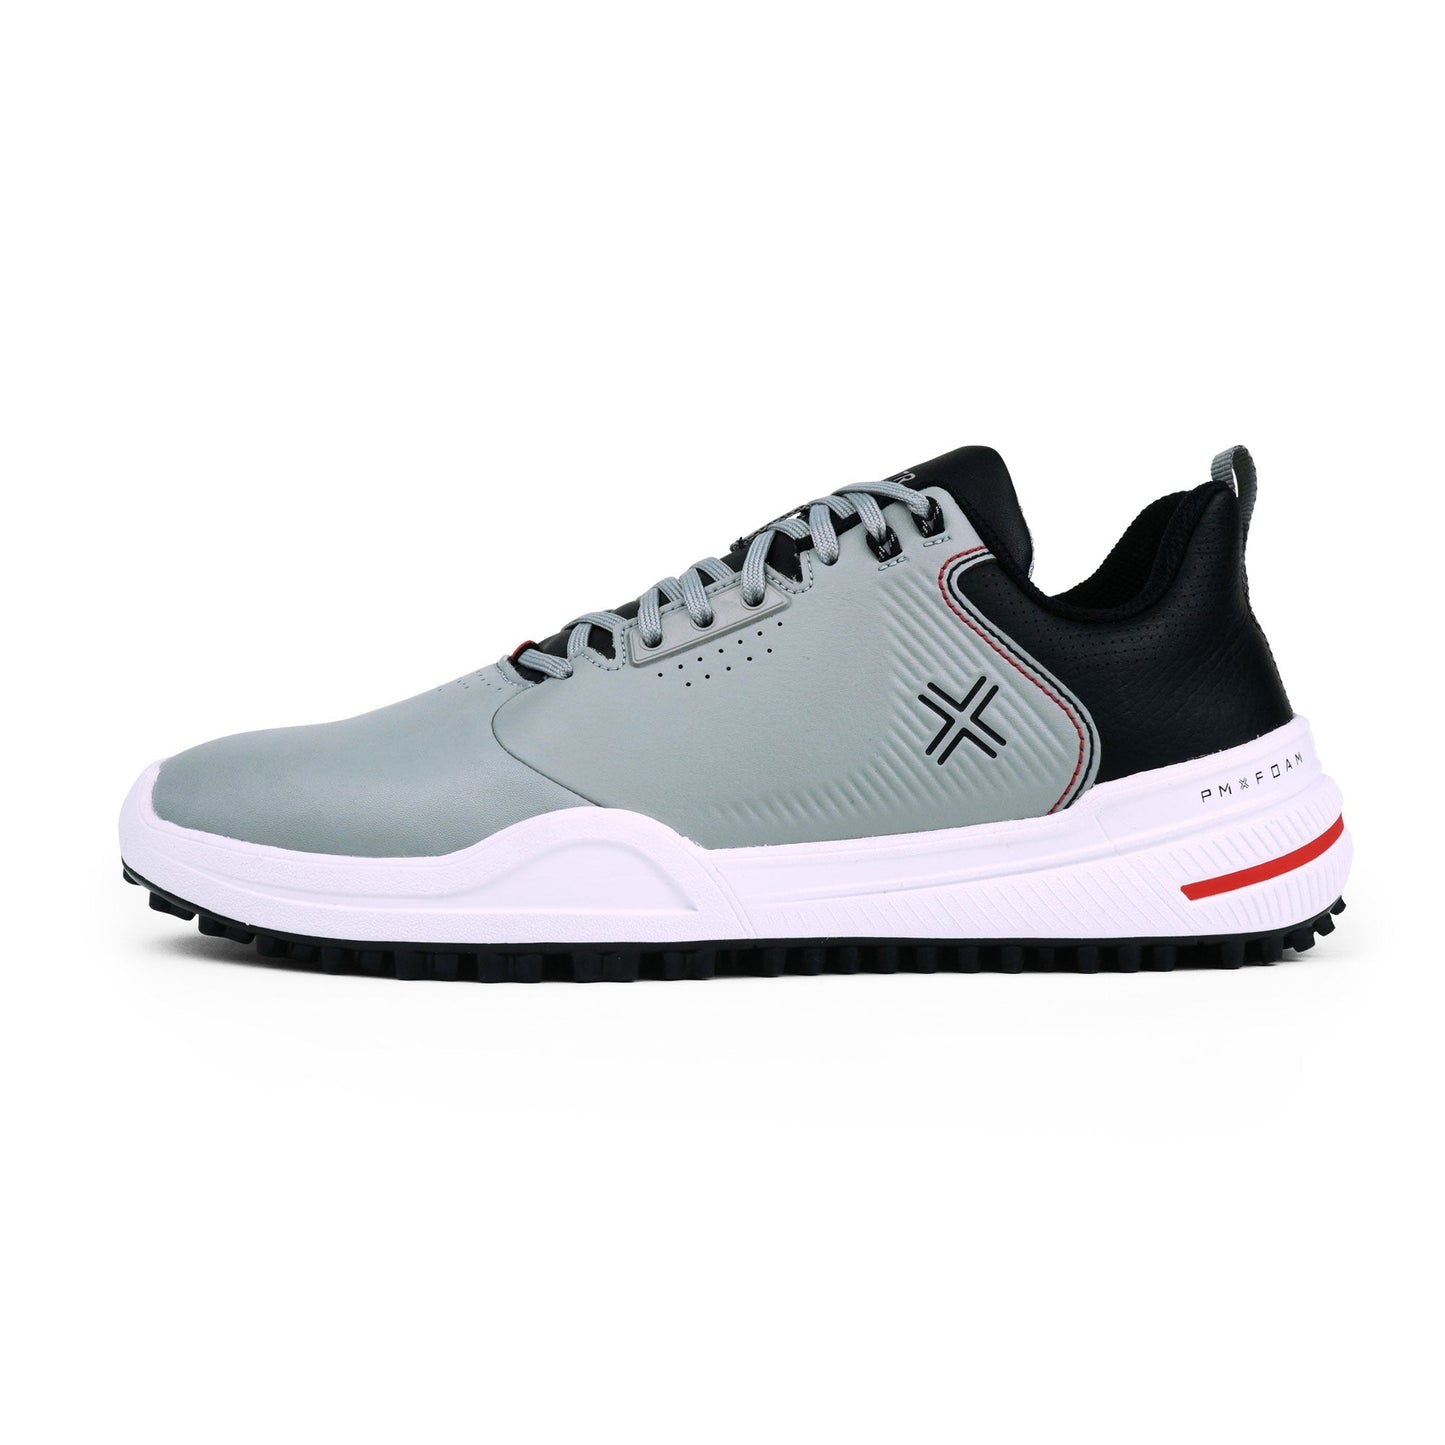 PAYNTR X 003 F Spikeless Golf Shoes